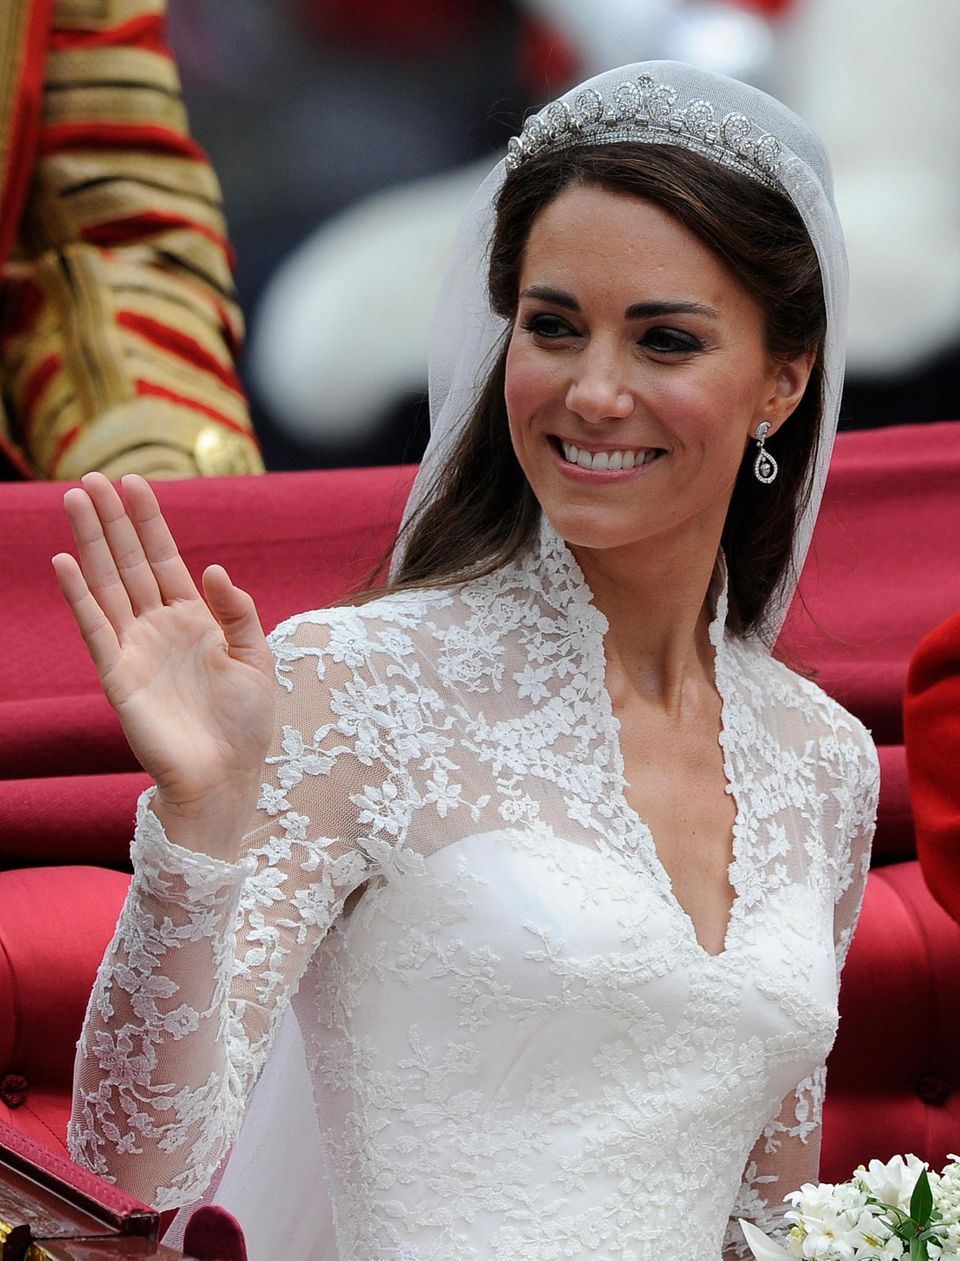 Das "hallo"-Cartiers Tiara ist etwas, das Kate an ihrem Hochzeitstag trägt "Geliehen" Von Queen Elizabeth II.